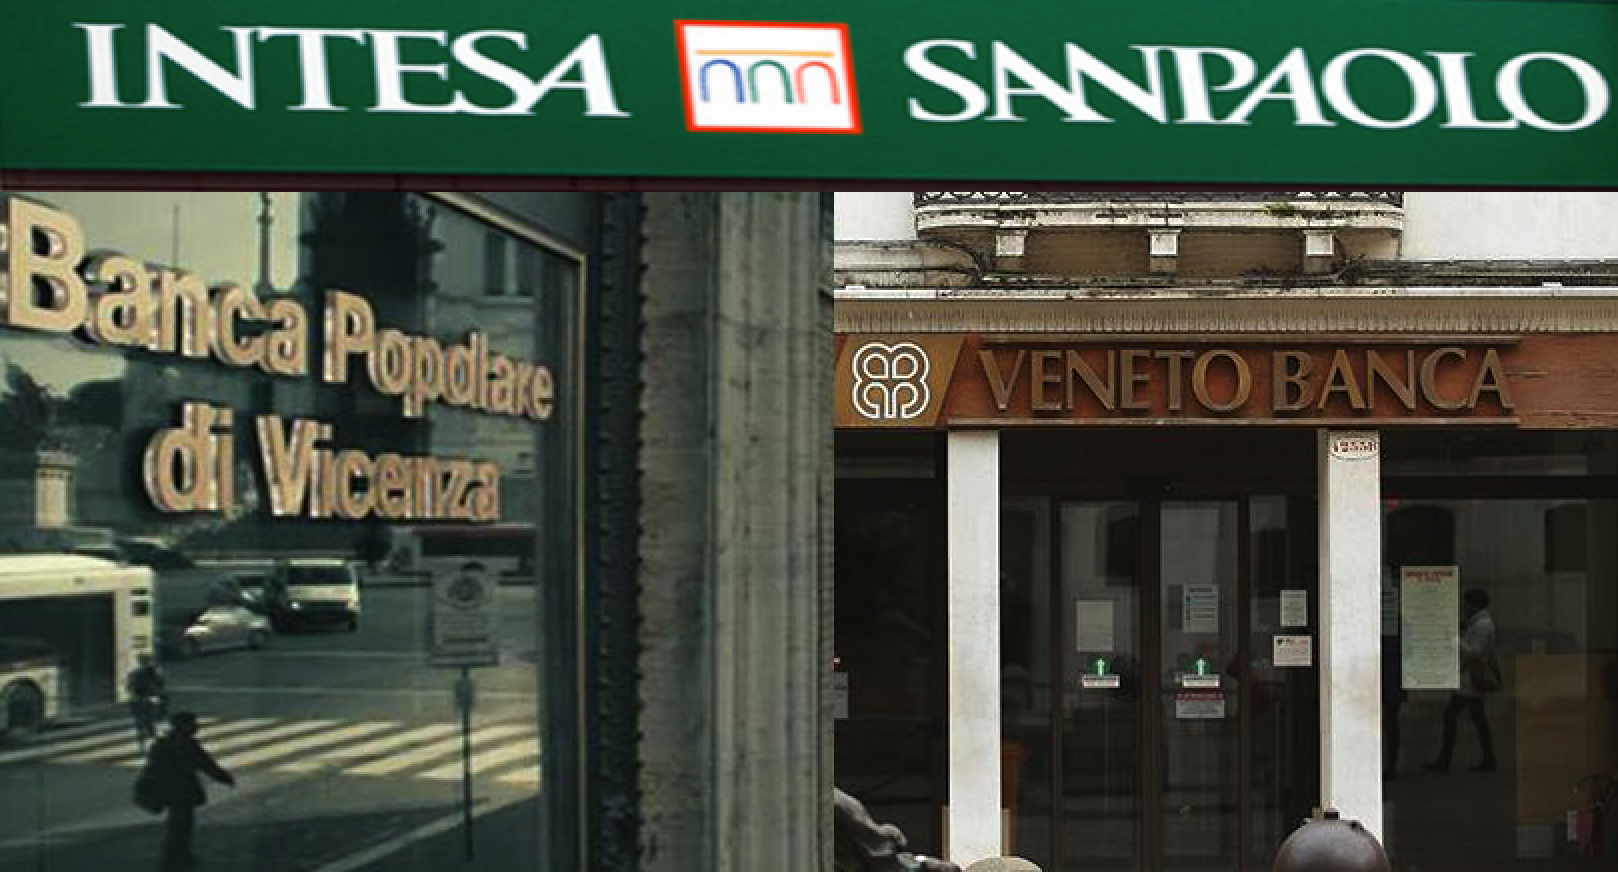 Banche venete: Intesa Sanpaolo chiamata a 